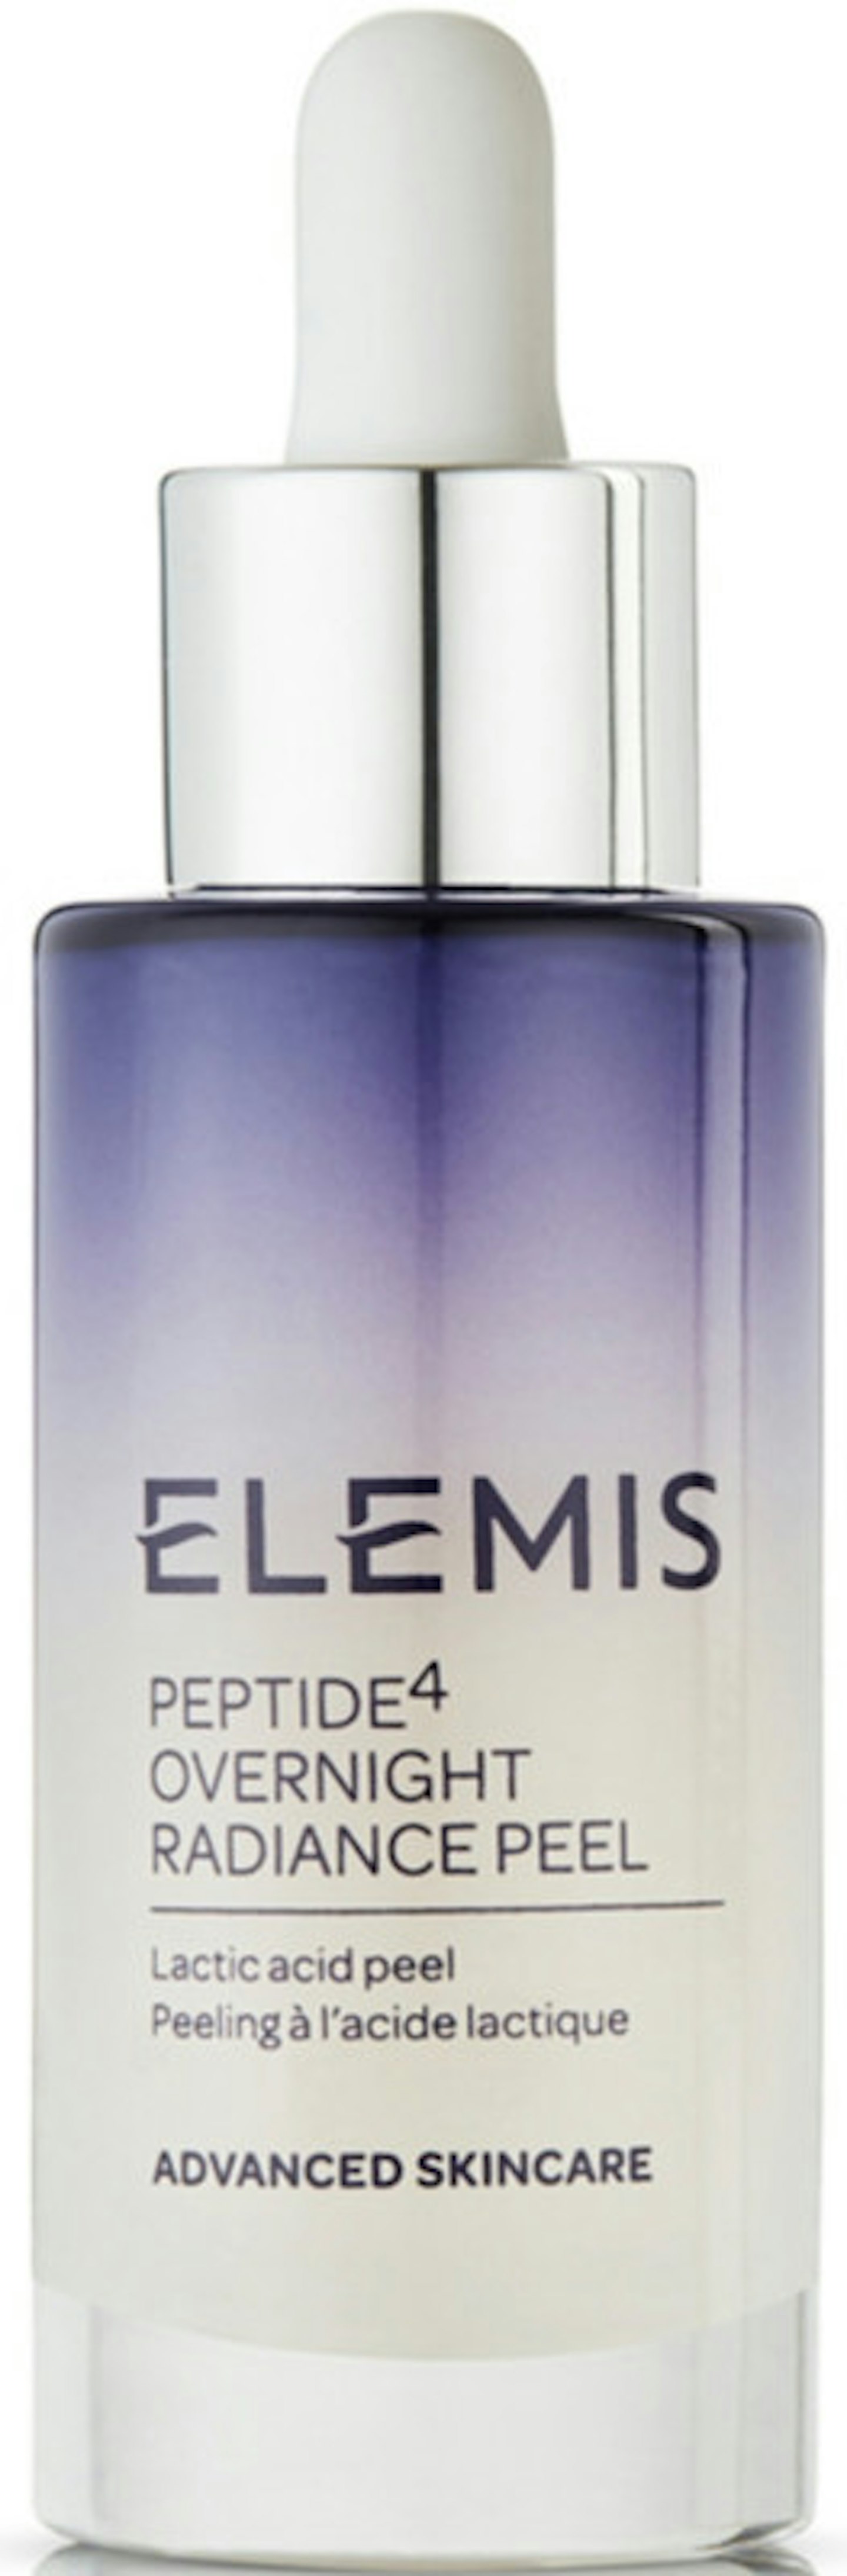 Elemis Peptide4 Overnight Radiance Peel, £56